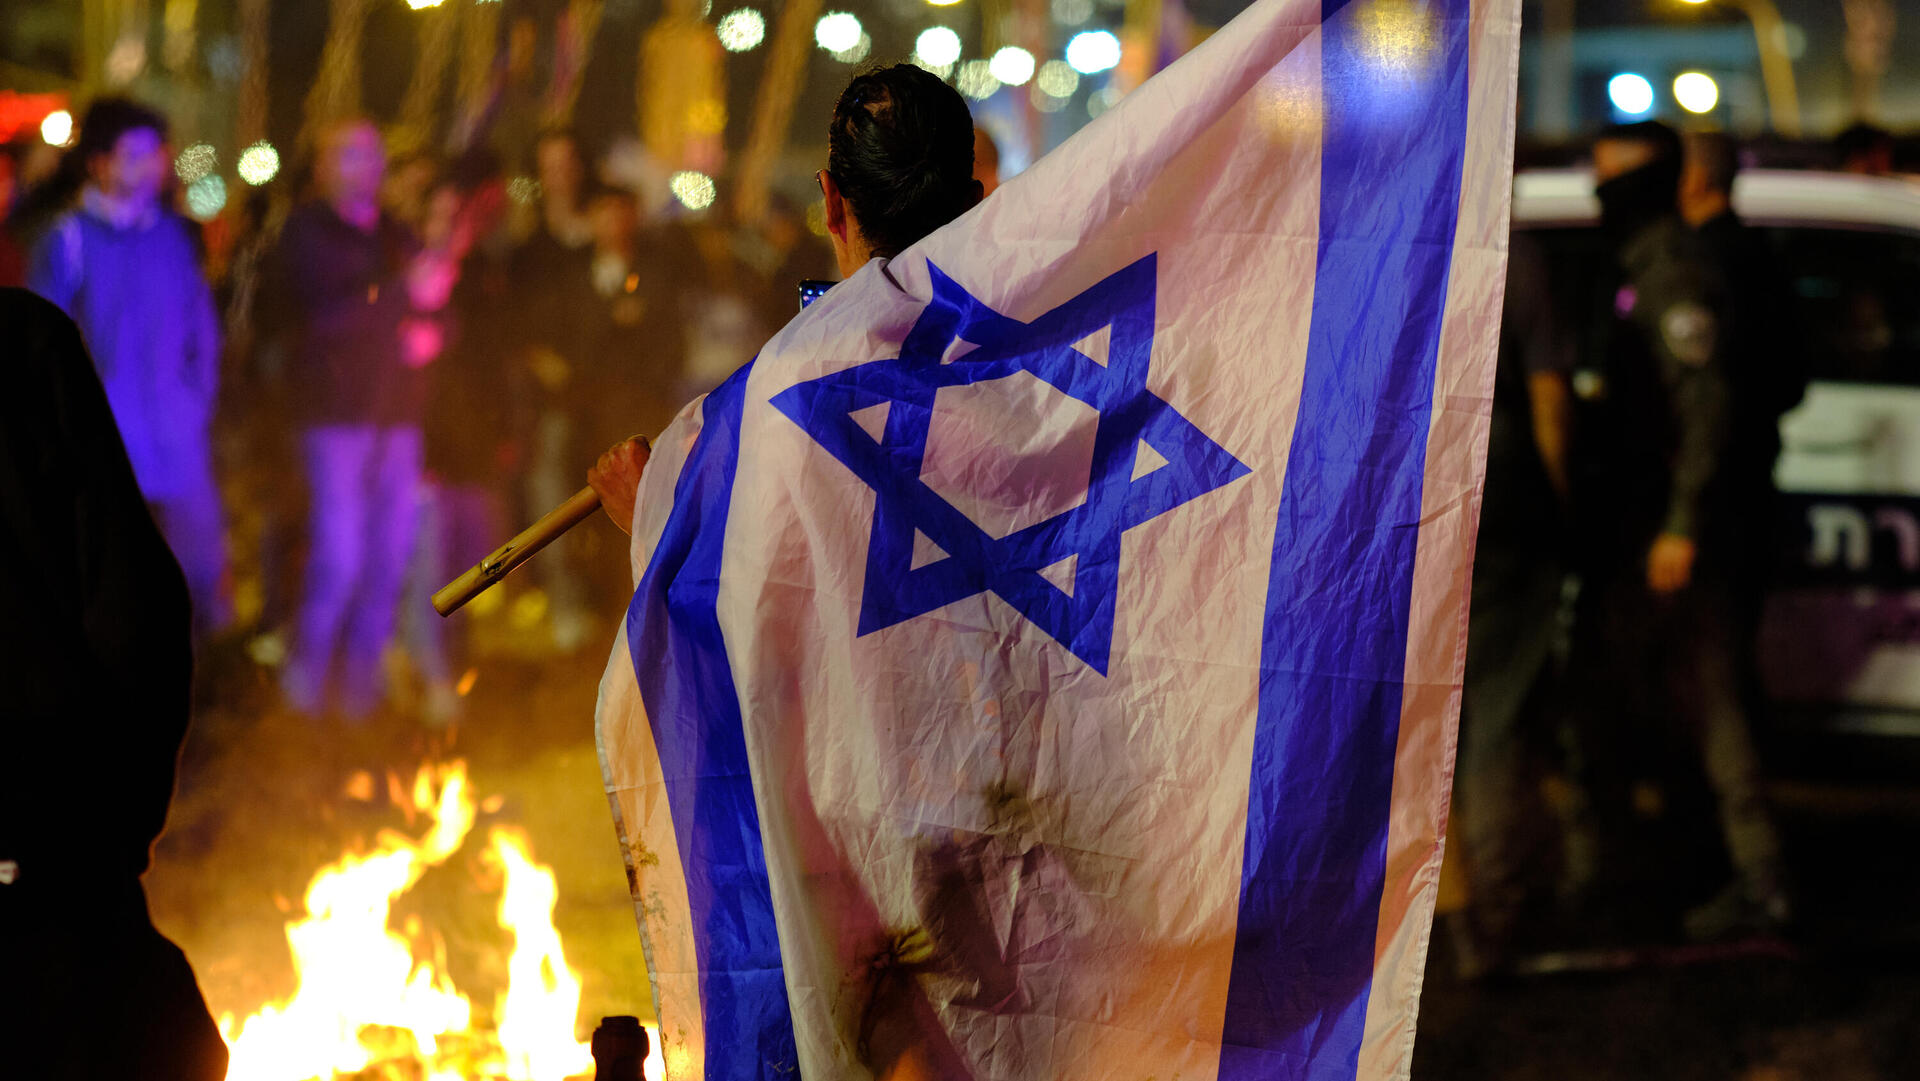 הפגנה מחאה בקפלן בתל אביב הפיכה משטרית 27.3